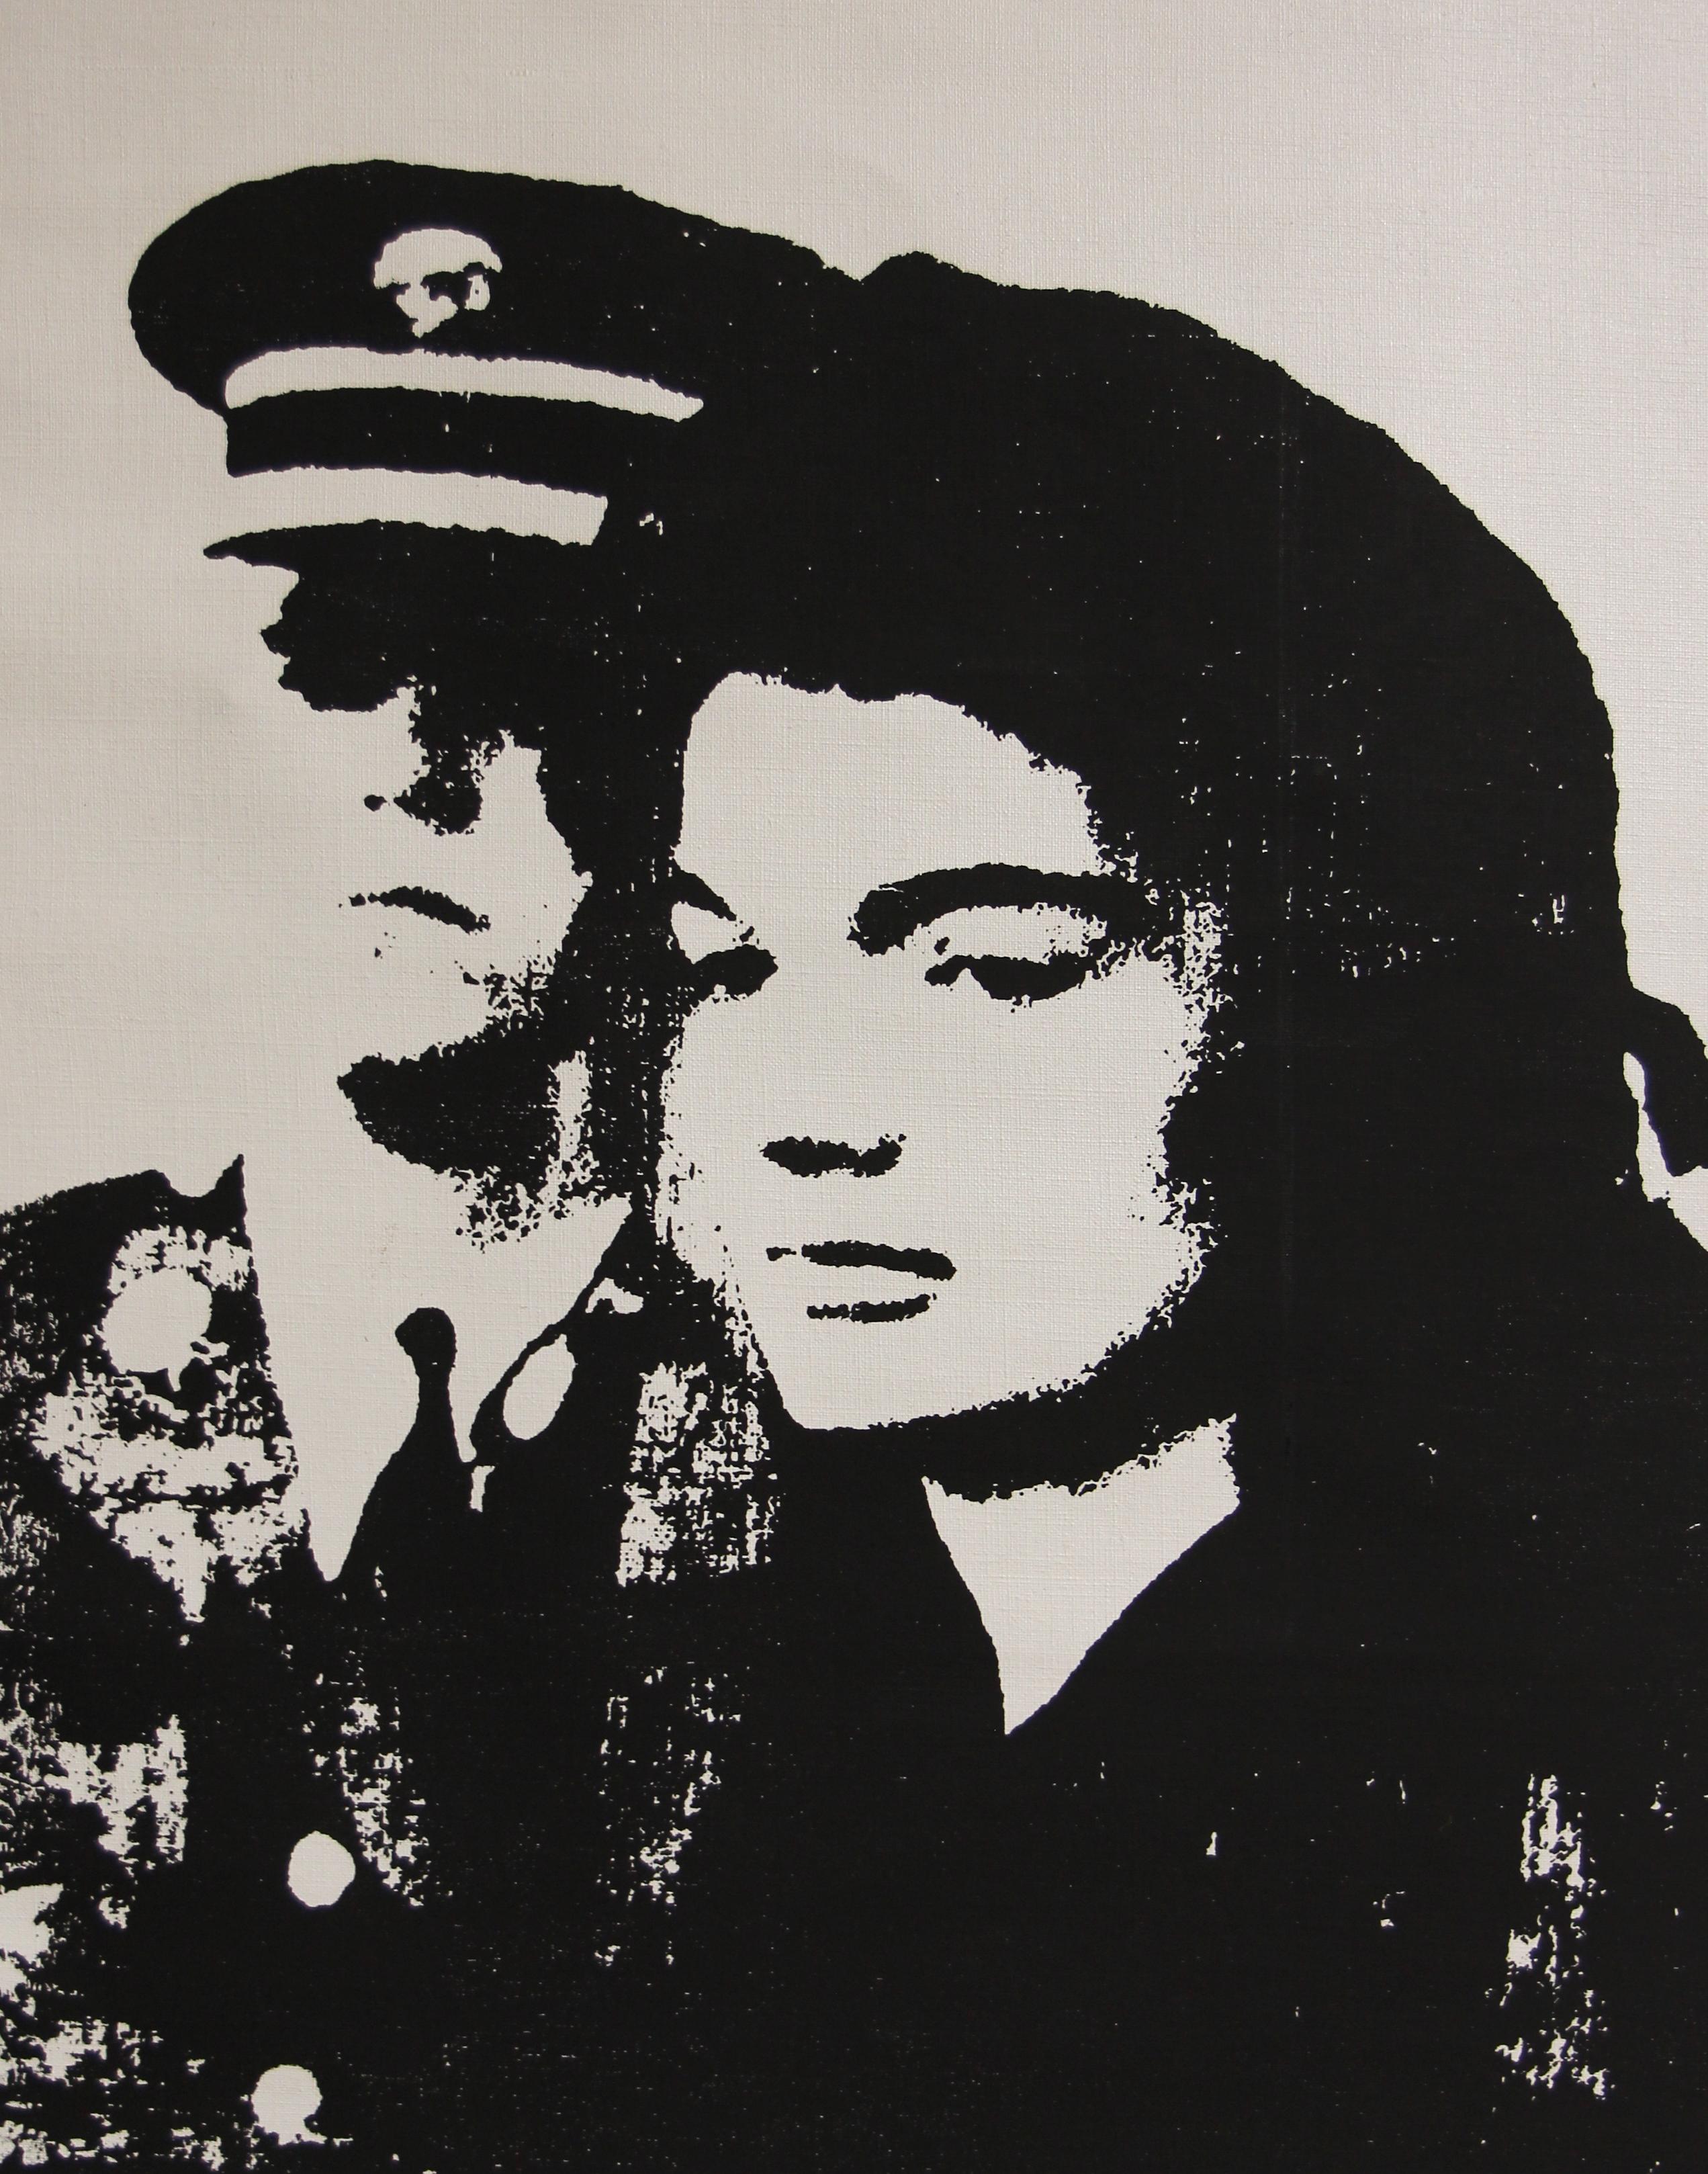 Verweigerter Warhol Jackie in Schwarz und Weiß von Charles Lutz
Siebdruck und goldene Sprühemaille auf Vintage-Leinen aus den 1960er Jahren mit Verweigerungsstempel des Andy Warhol Art Authentication Board.
20 x 16" Zoll
2008

Lutz' Serie "Warhol